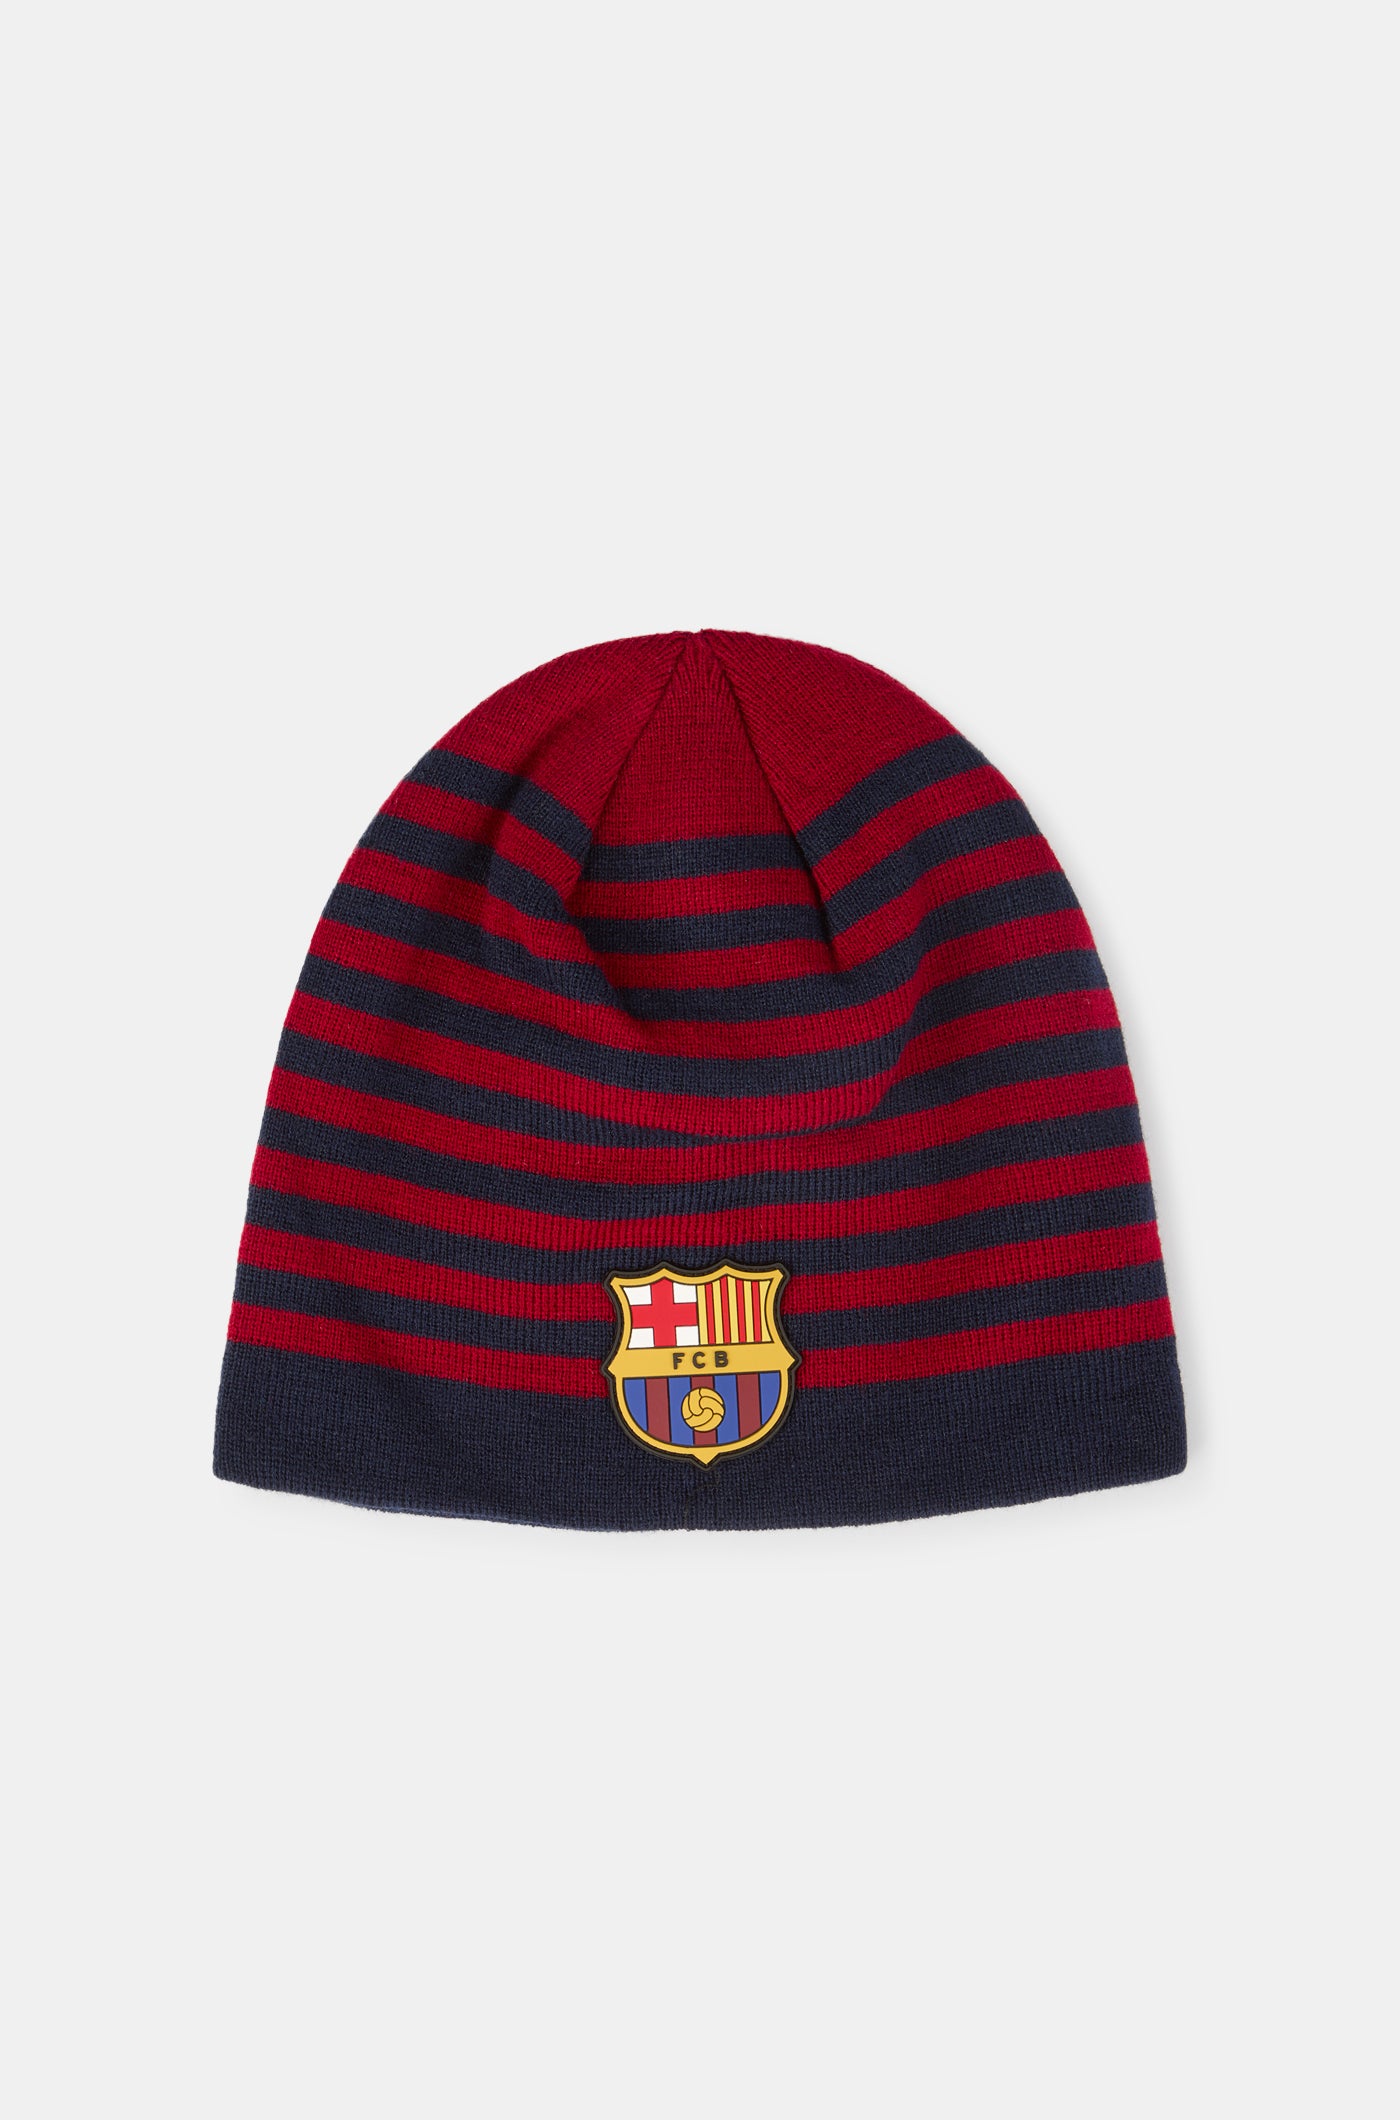  Strickmütze des FC Barcelona mit Wappen